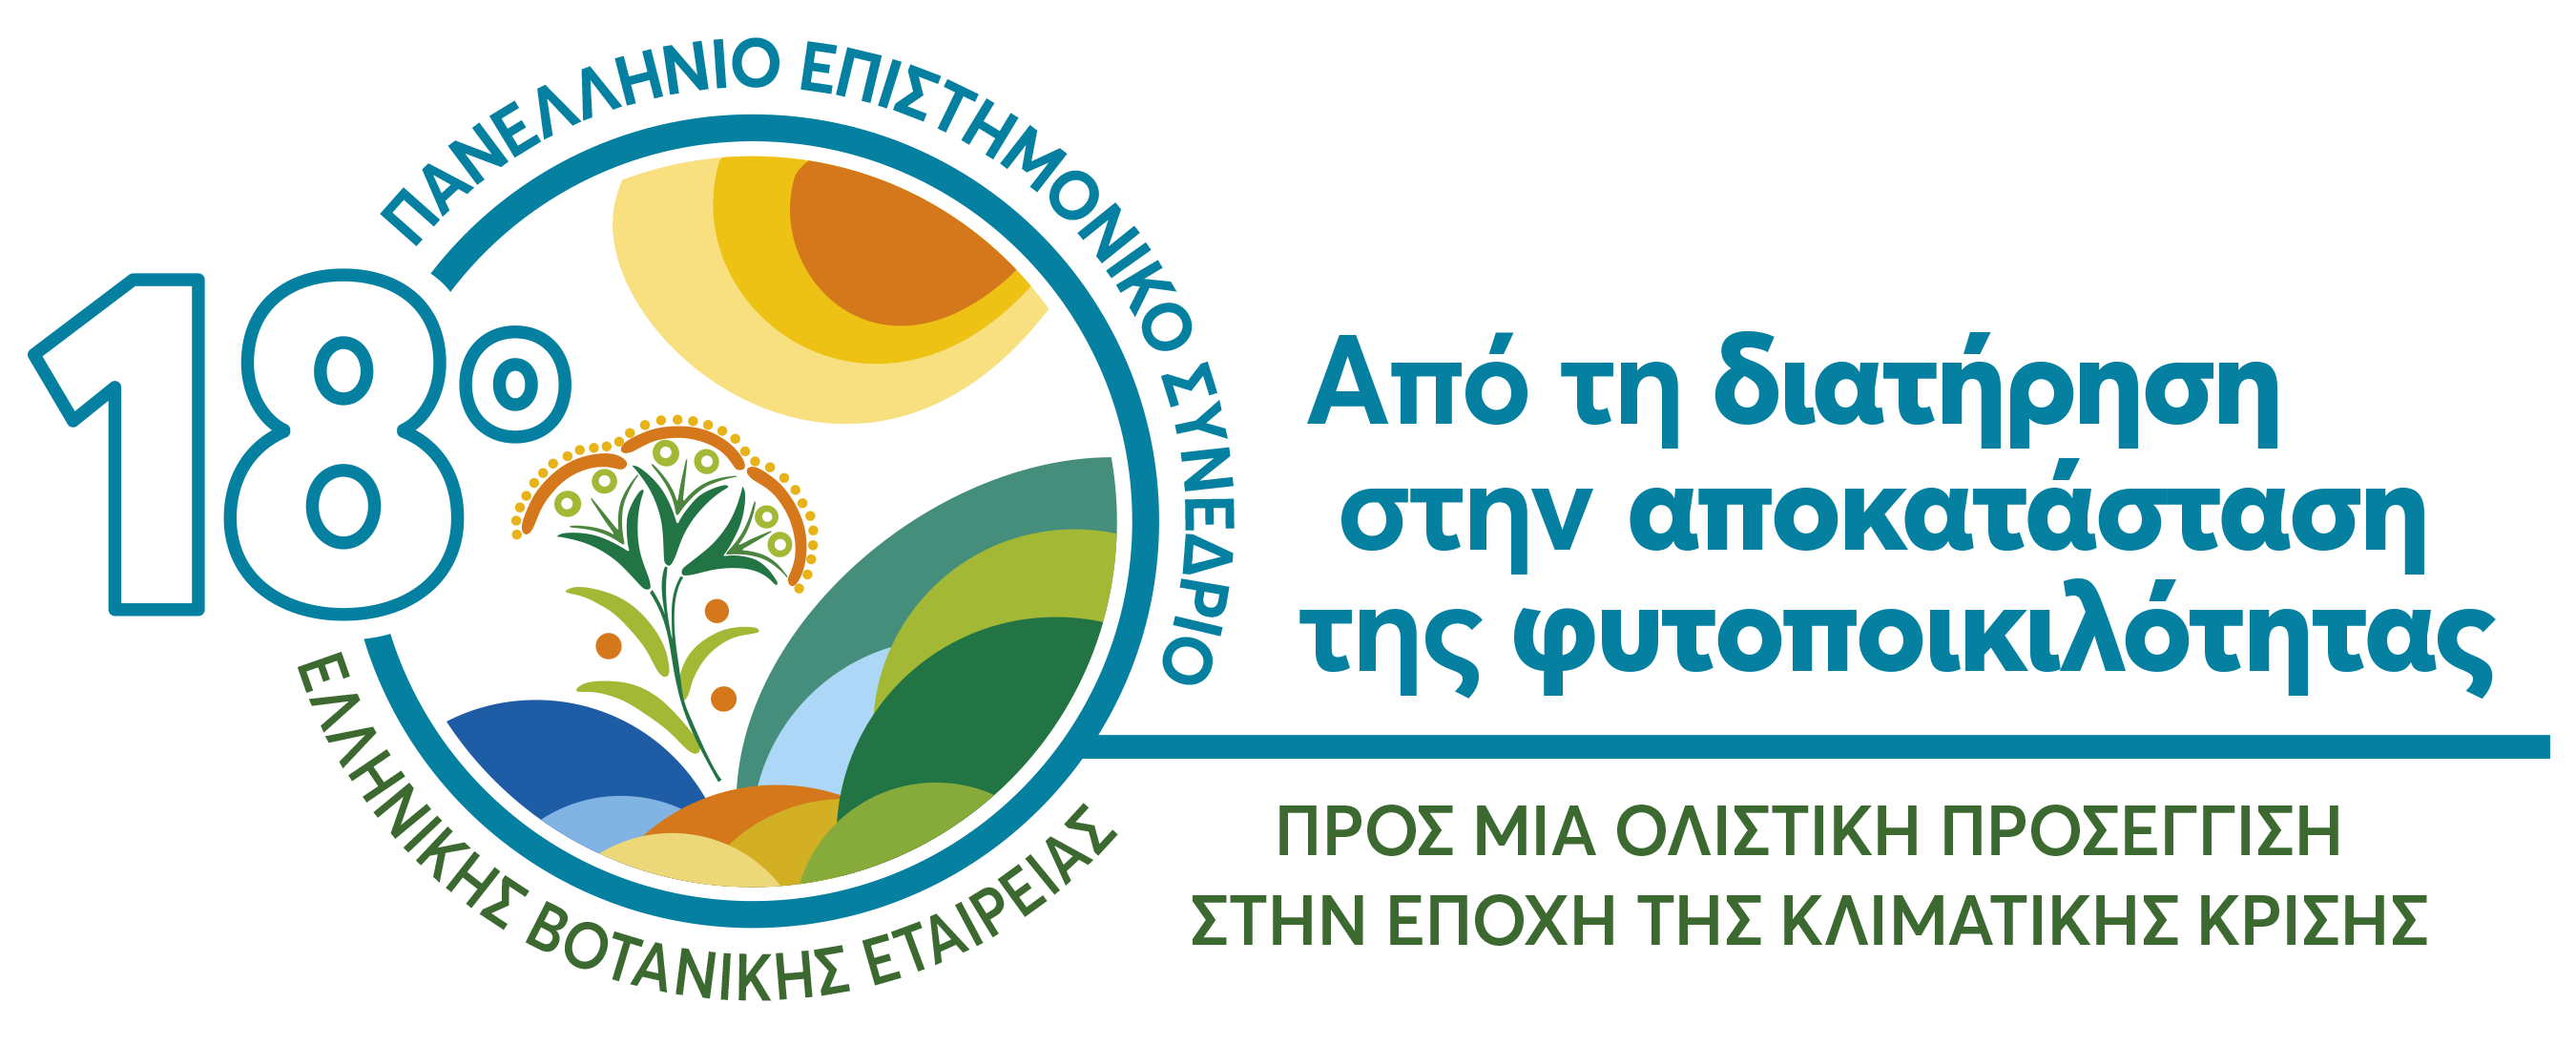 Λογότυπο 18ου Πανελλήνιου Επιστημονικού Συνεδρίου Ελληνικής Βοτανικής Εταιρείας